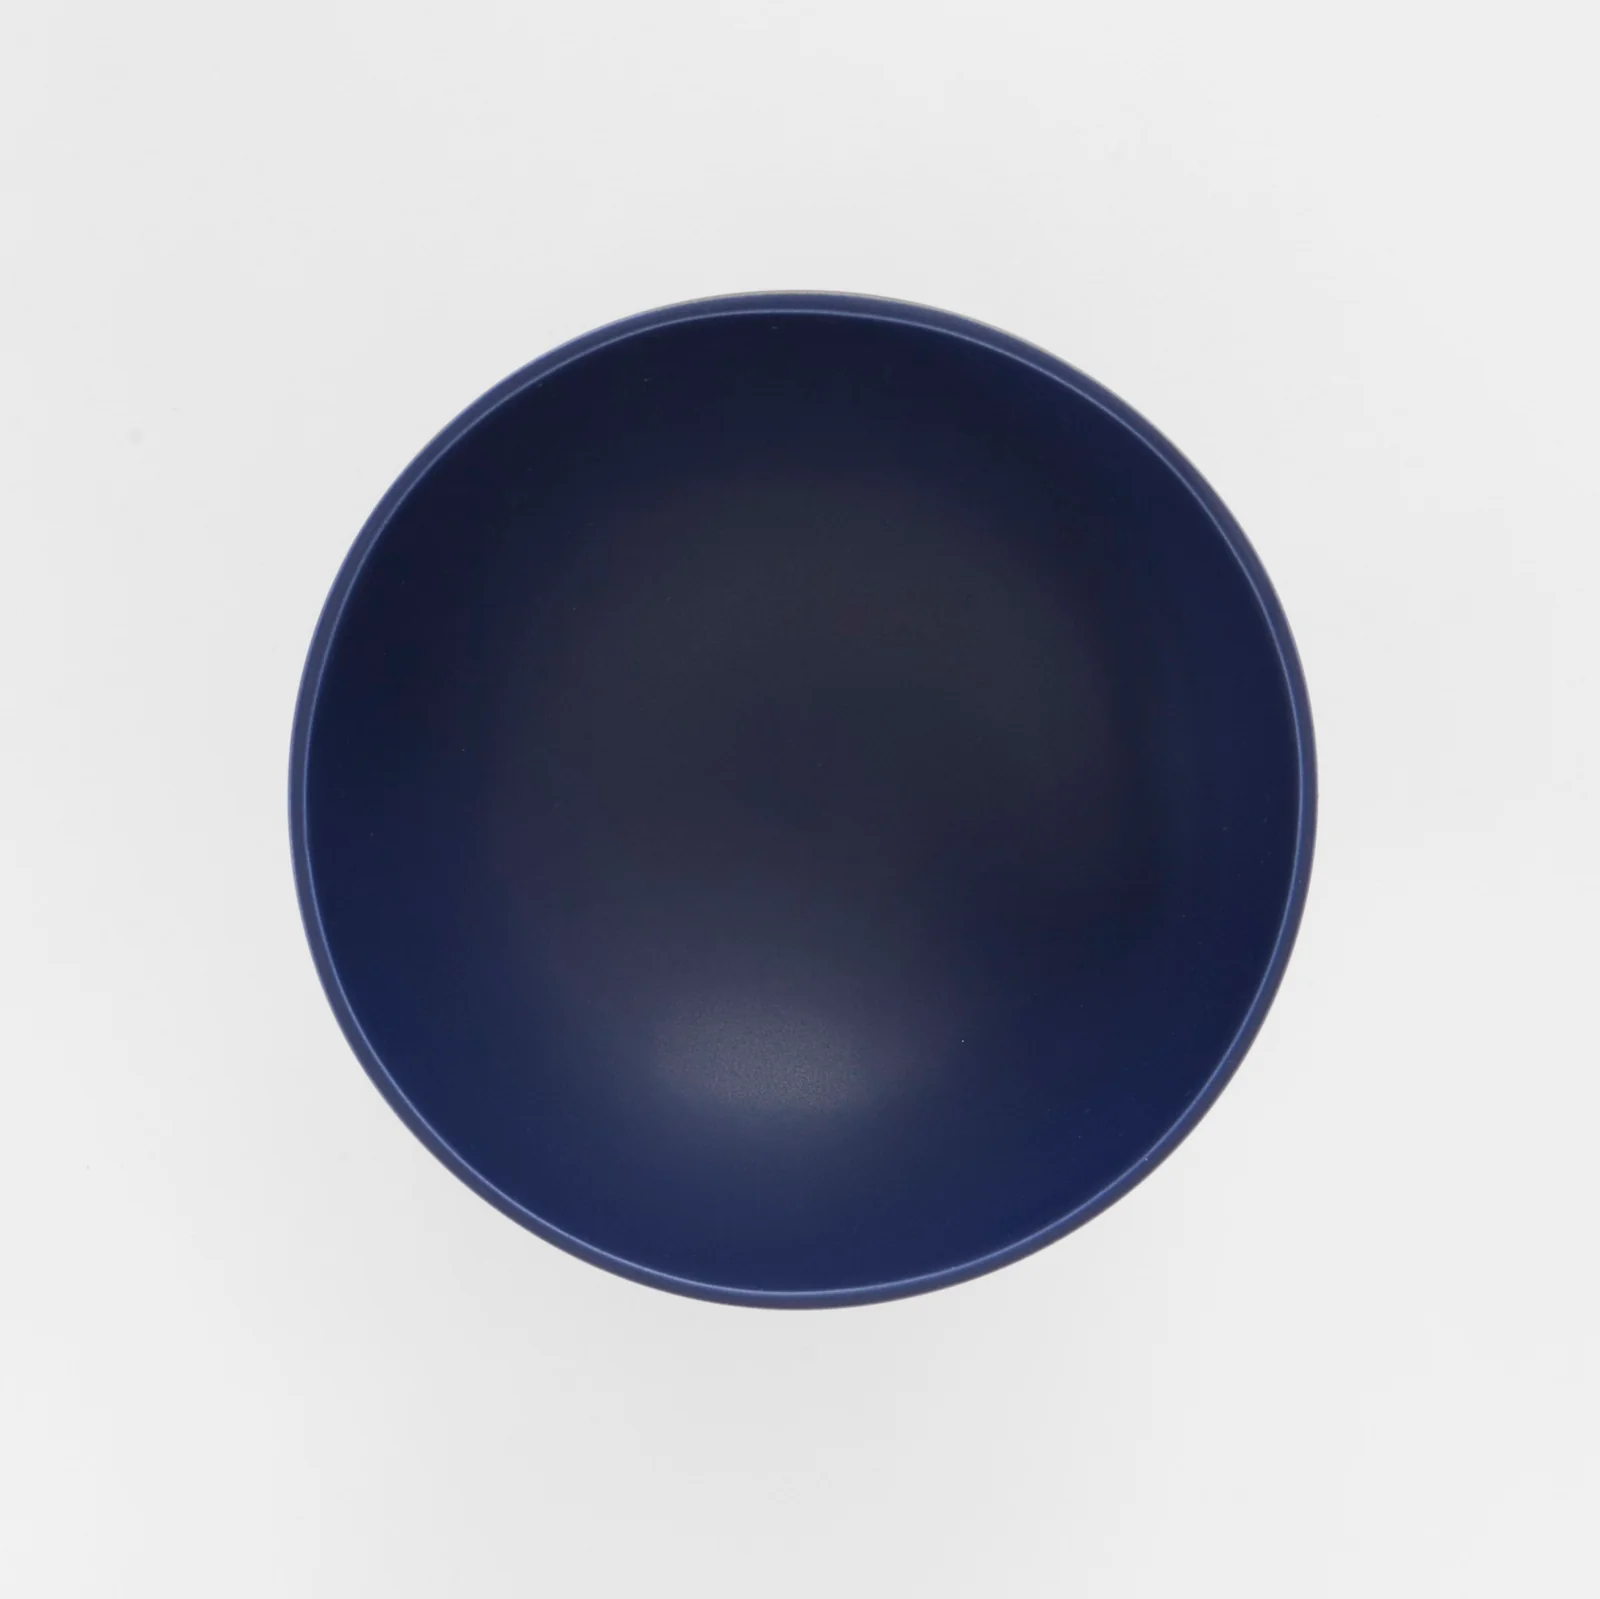 Strøm Large Bowl, Blue